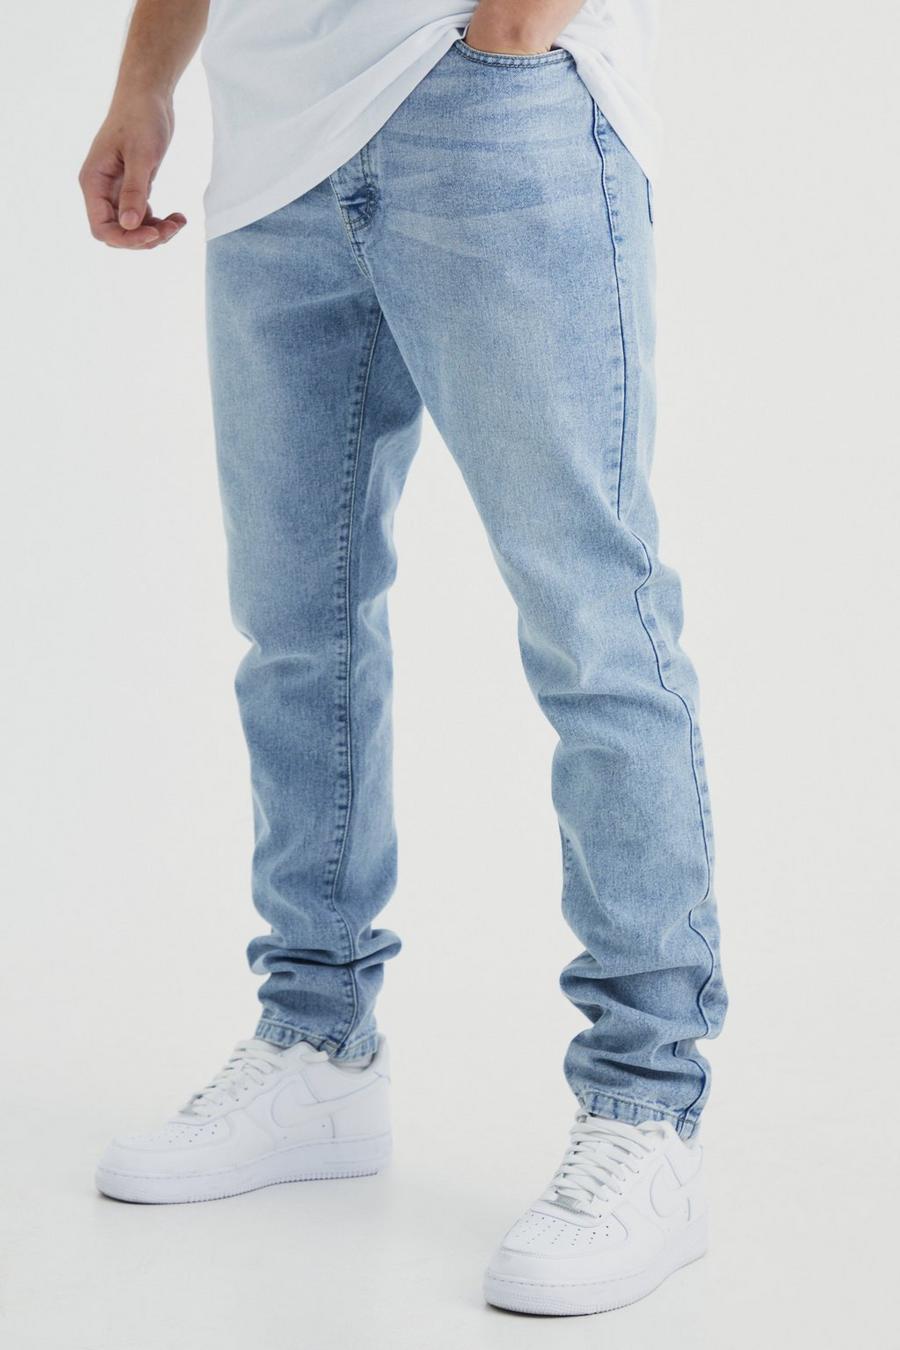 Jeans Tall Slim Fit in denim rigido, Light blue